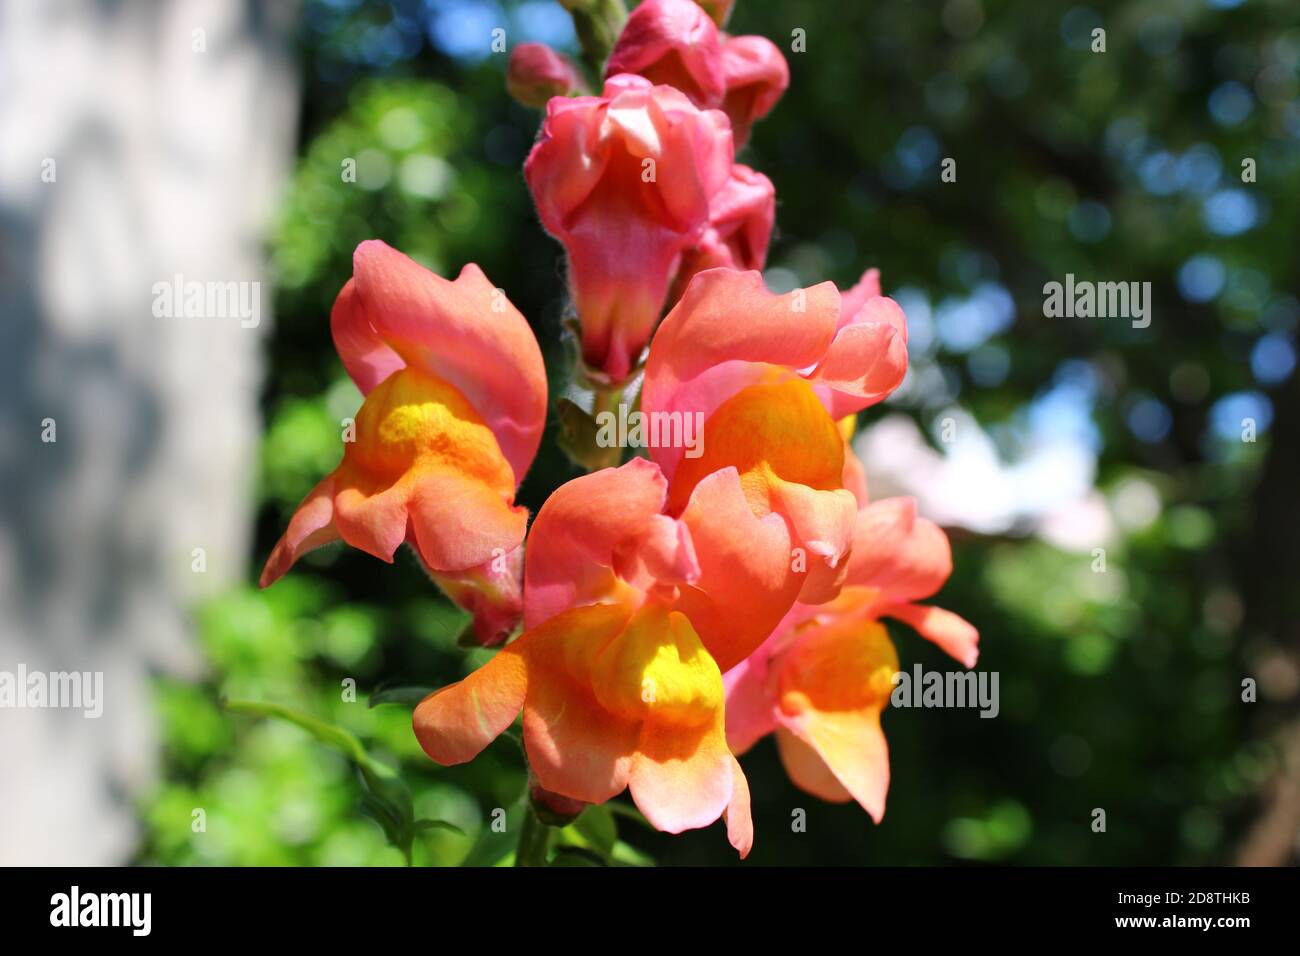 Alamy Pink-orange snapdragon / Löwenmaul Blume im Garten, Nahaufnahme mit verschwommenem Hintergrund. Stockfoto